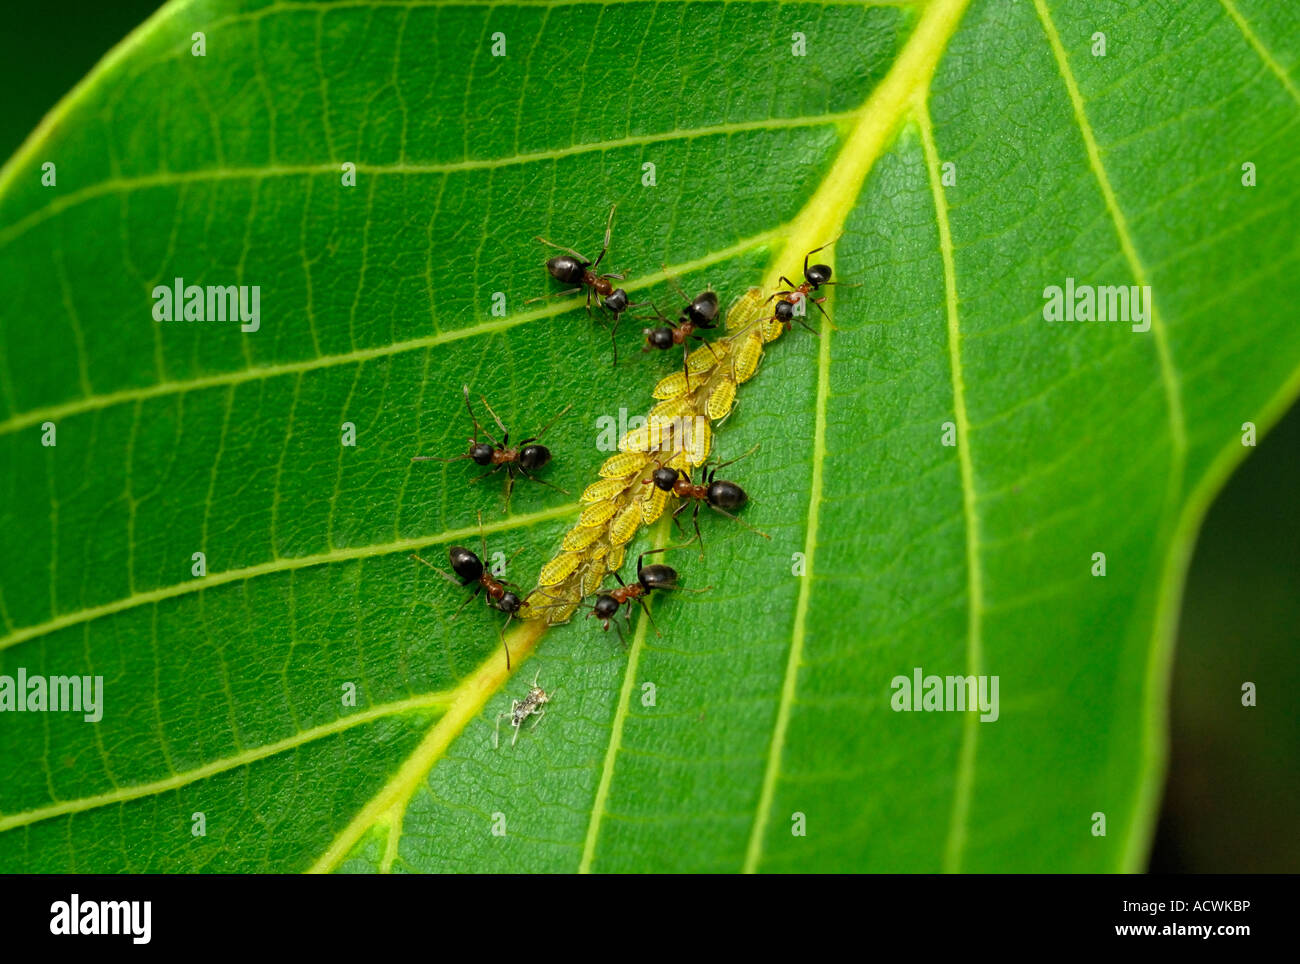 Holz-Ameisen / Formica Rufa, Landwirtschaft Blattläuse für Honigtau auf Walnuss Baum Blatt - Frankreich. Stockfoto